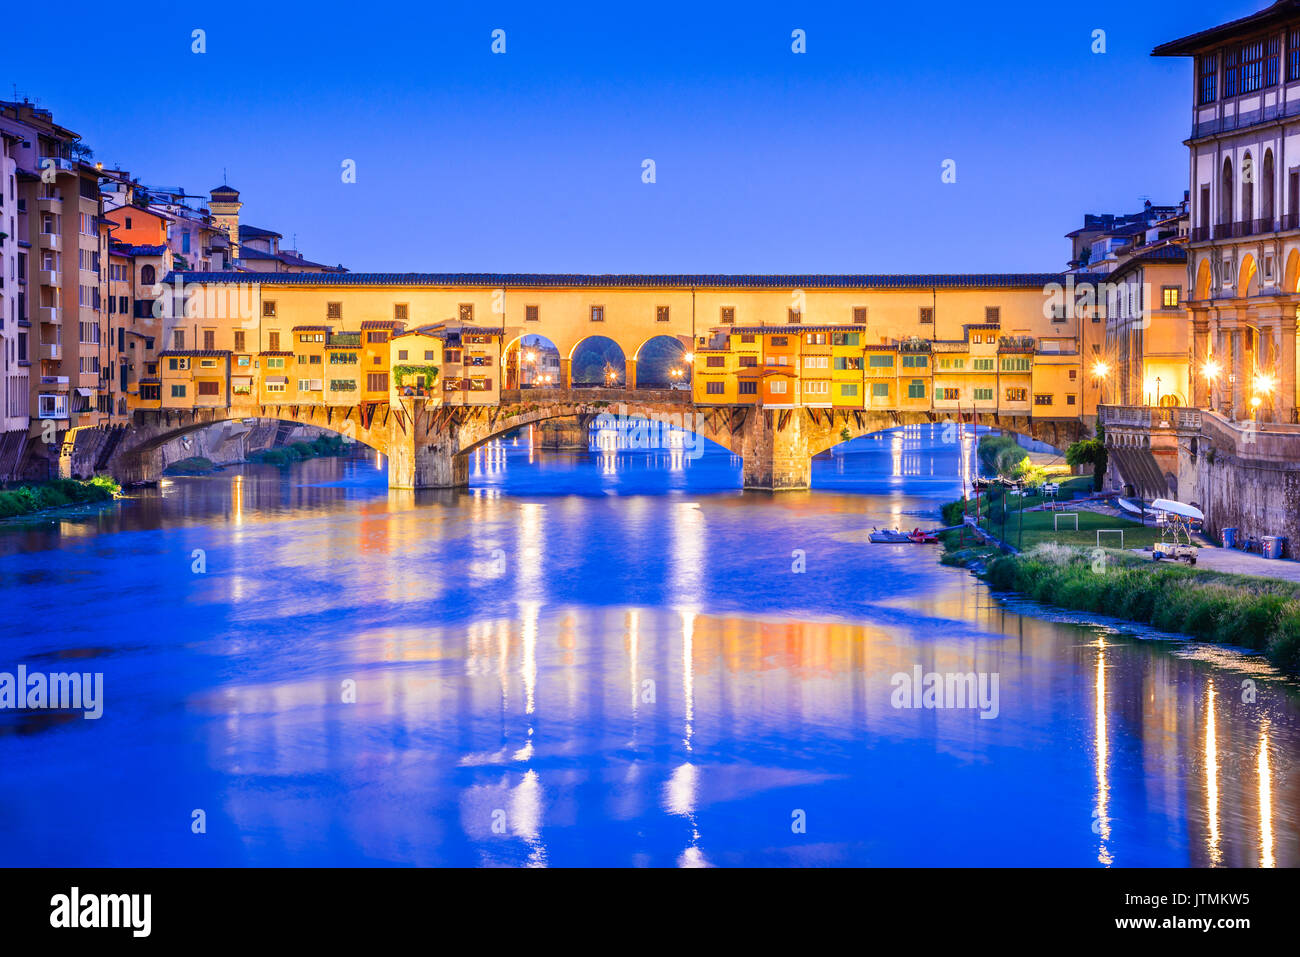 Florenz, Toskana - Ponte Vecchio, mittelalterliche Steinbogen Brücke über den Fluss Arno, Architektur der Renaissance in Italien. Stockfoto